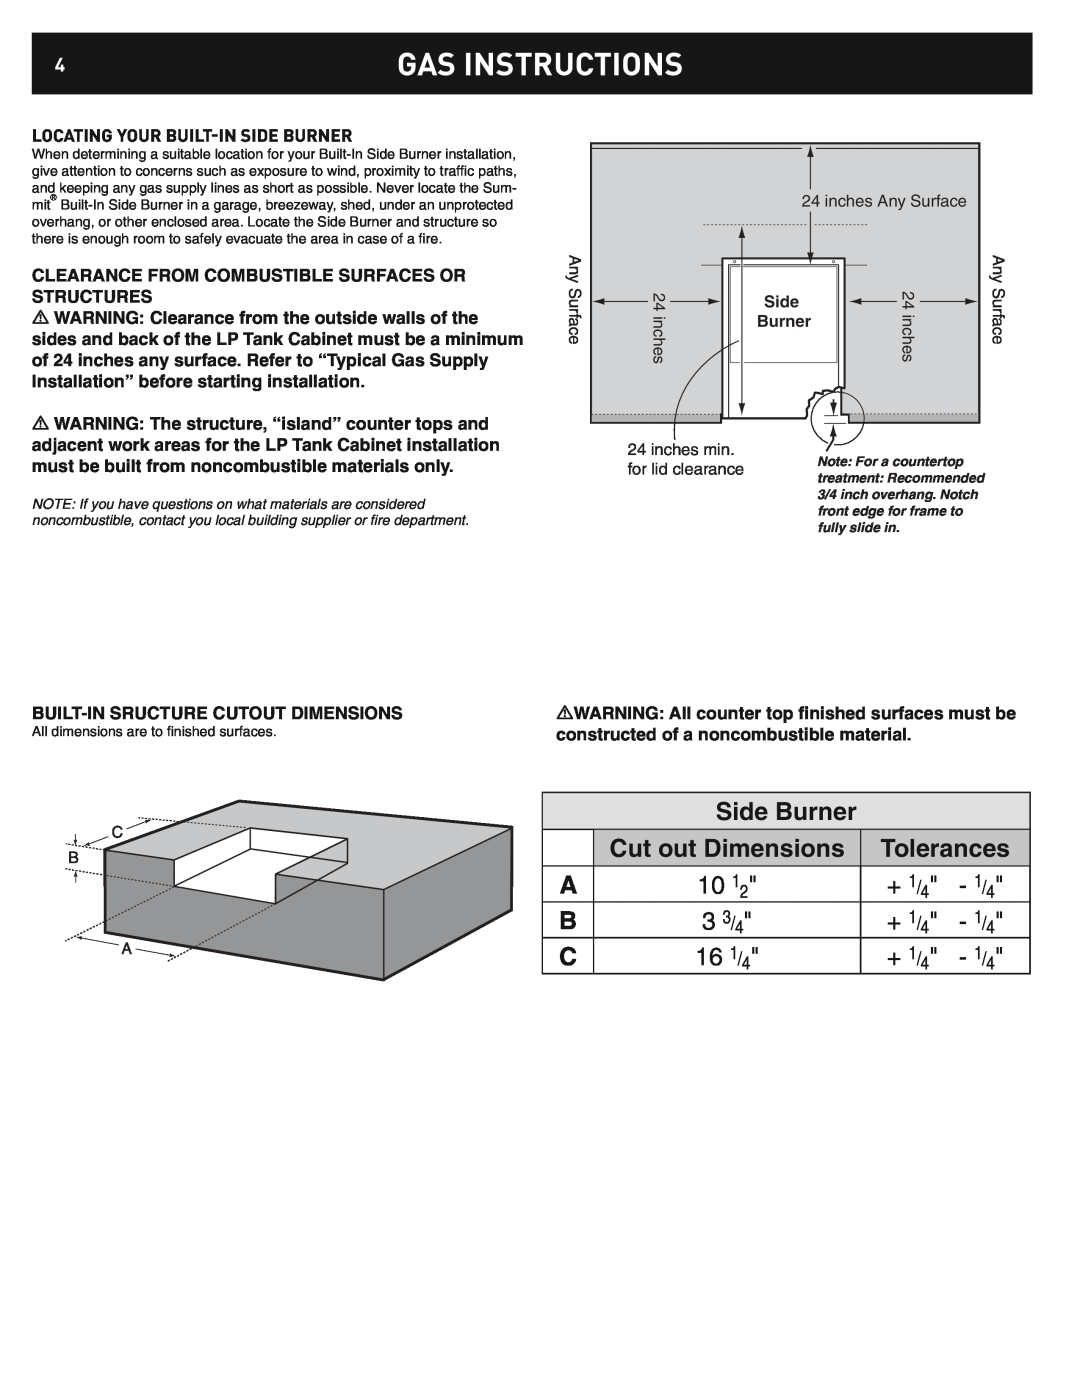 Weber 42376 Gas Instructions, Locating Your Built-Inside Burner, Side Burner, Cut out Dimensions, Tolerances, + 1/4 - 1/4 